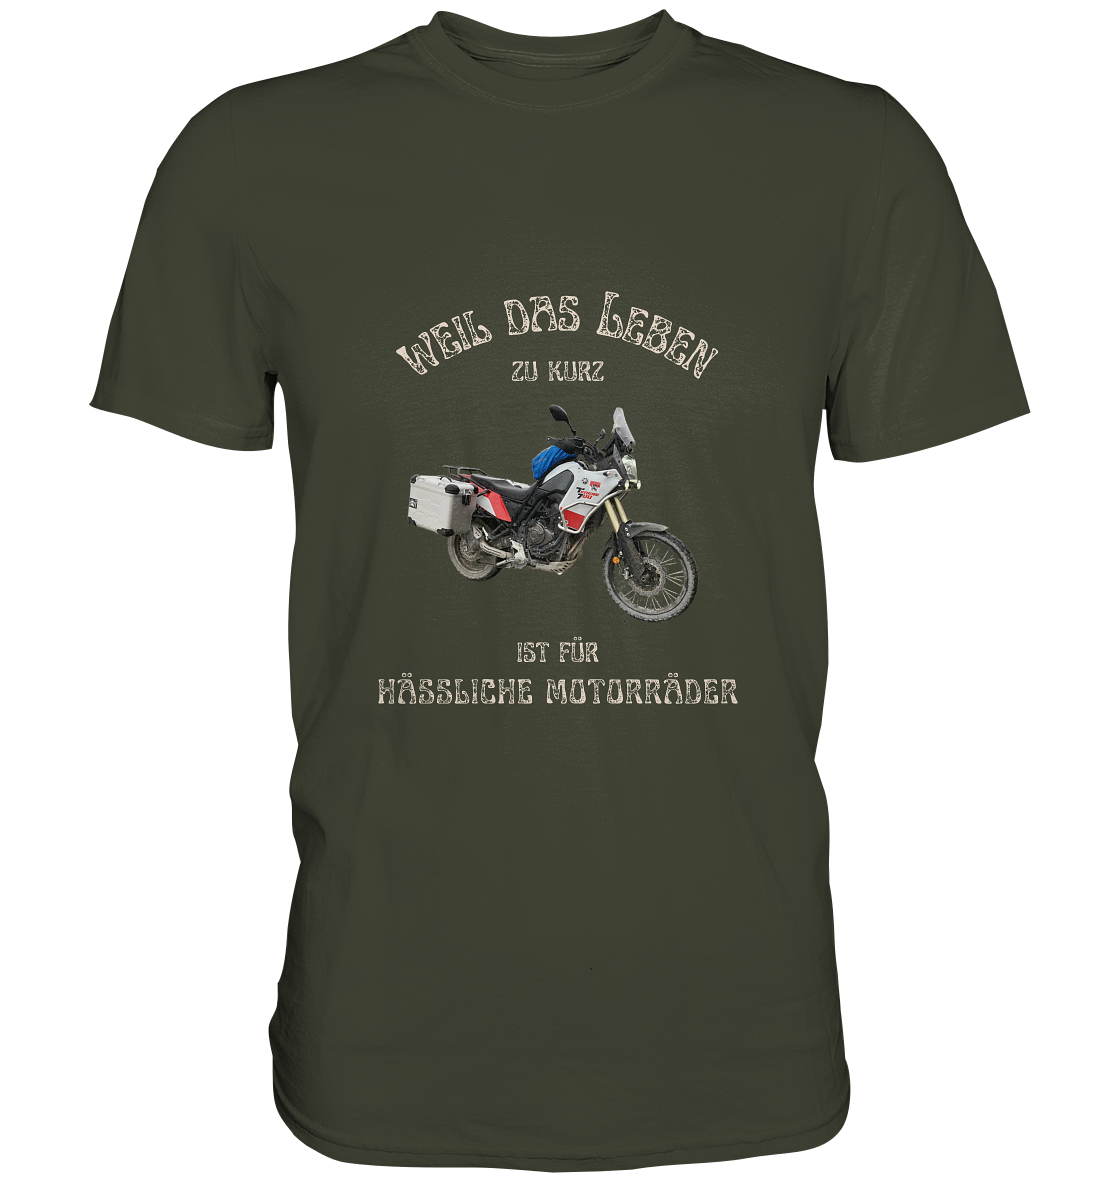 "Weil das Leben zu kurz ist für hässliche Motorräder" _ für Tim Hönnens | individualisiertes Shirt mit Foto und Motorrad-Spruch in hellem Design